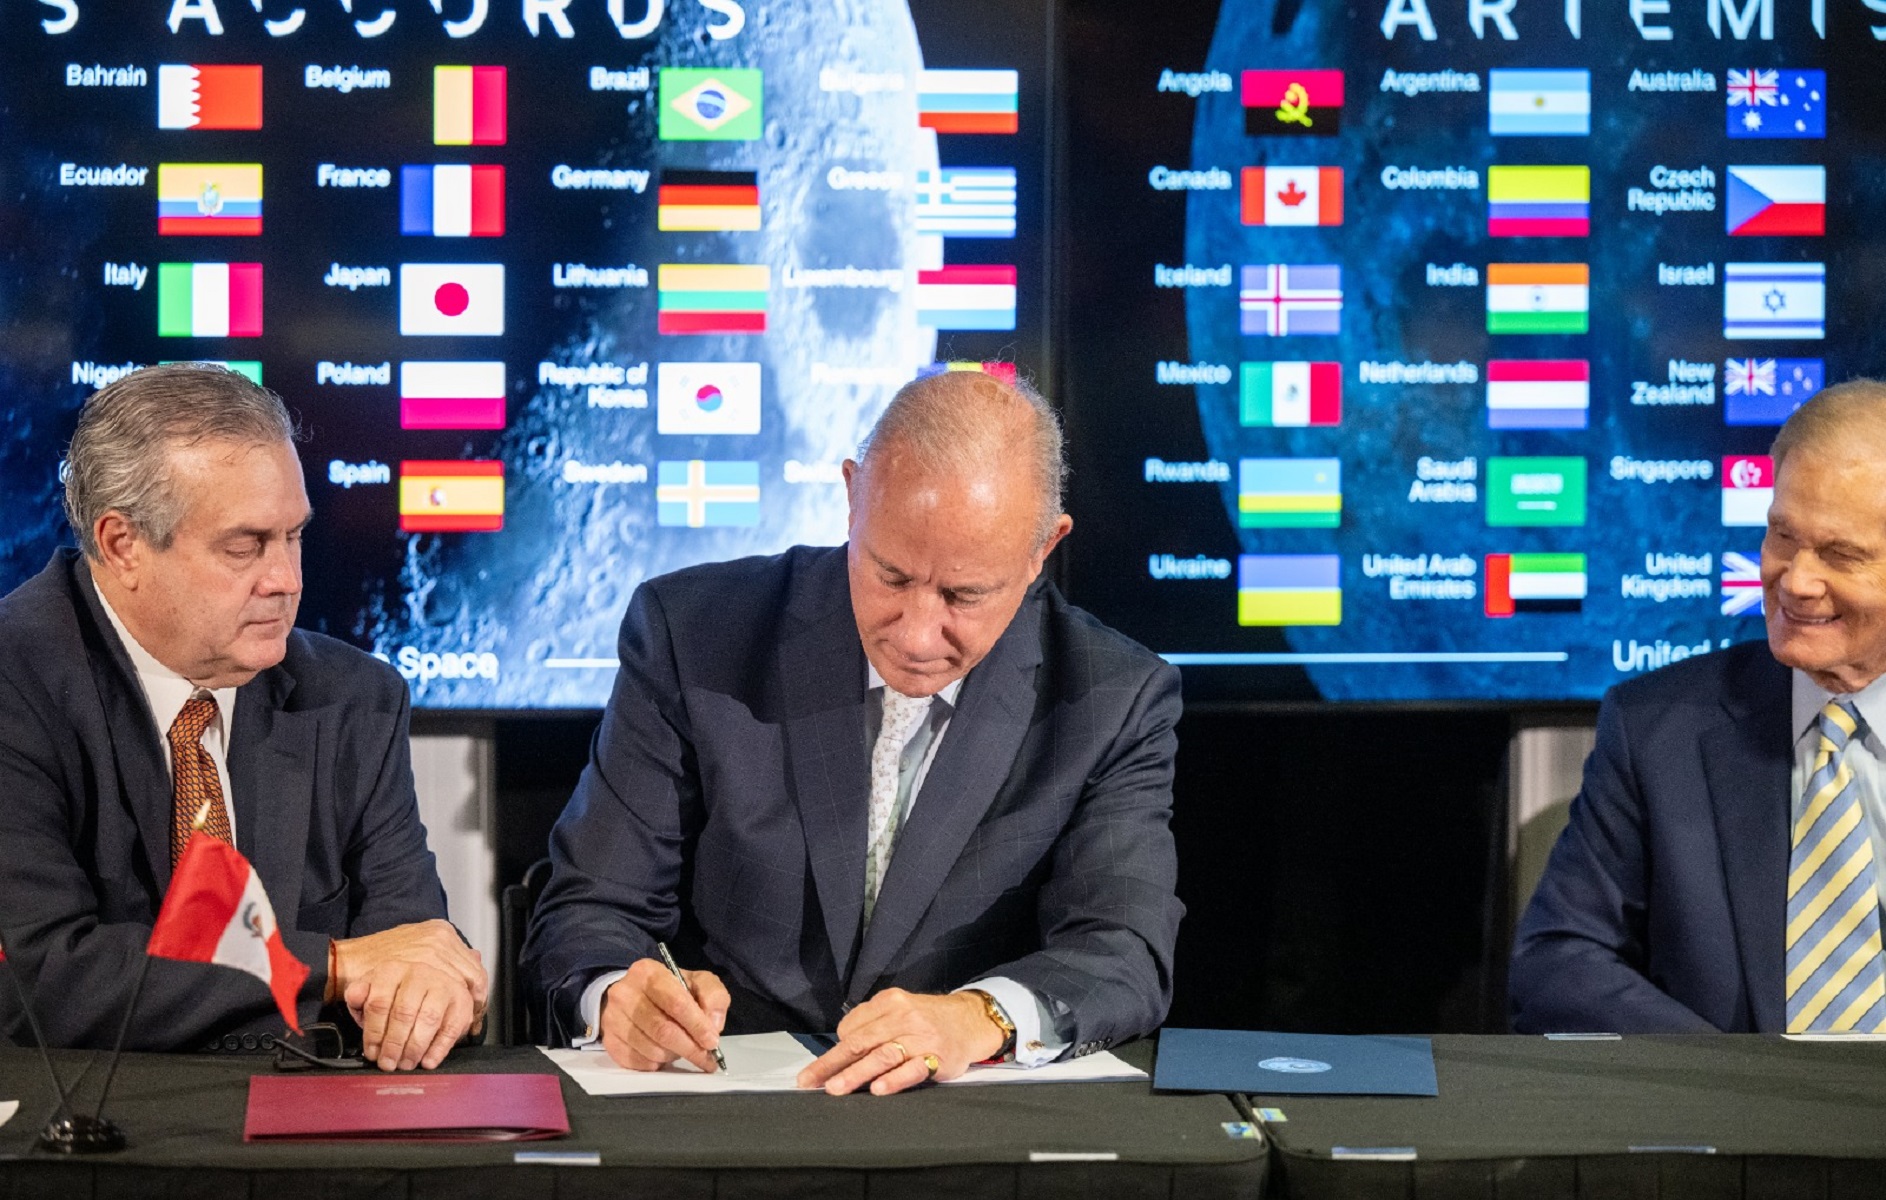 El Perú suscribió en la NASA los Acuerdos de Artemisa para la exploración espacial, consolidando a nuestro país en su desarrollo científico y aeroespacial.